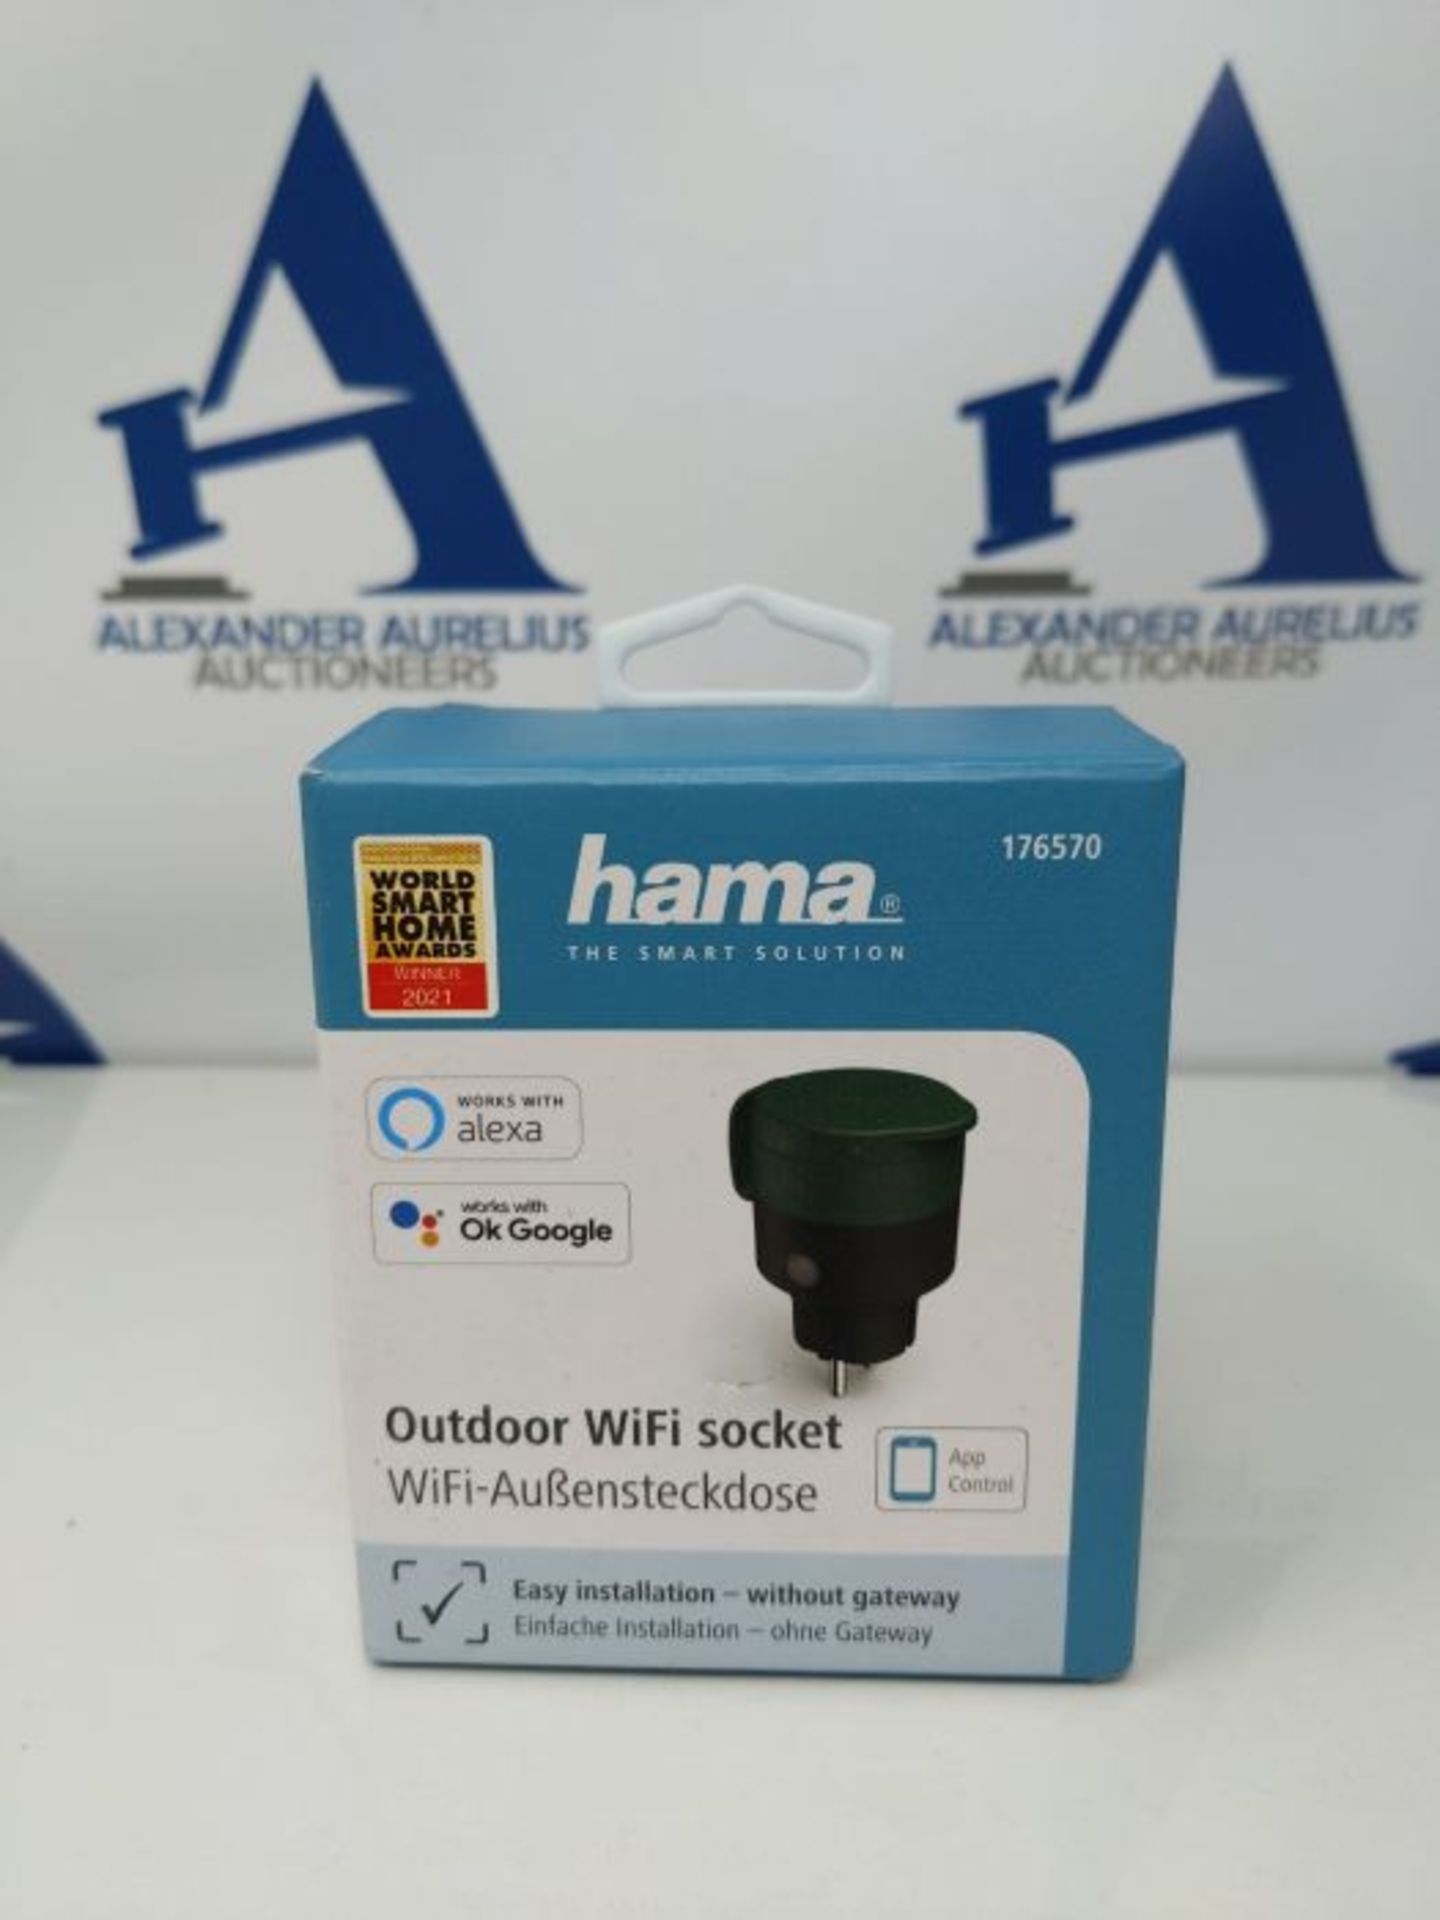 Hama WiFi socket outdoor (garden socket without hub/gateway, WiFi outdoor socket for a